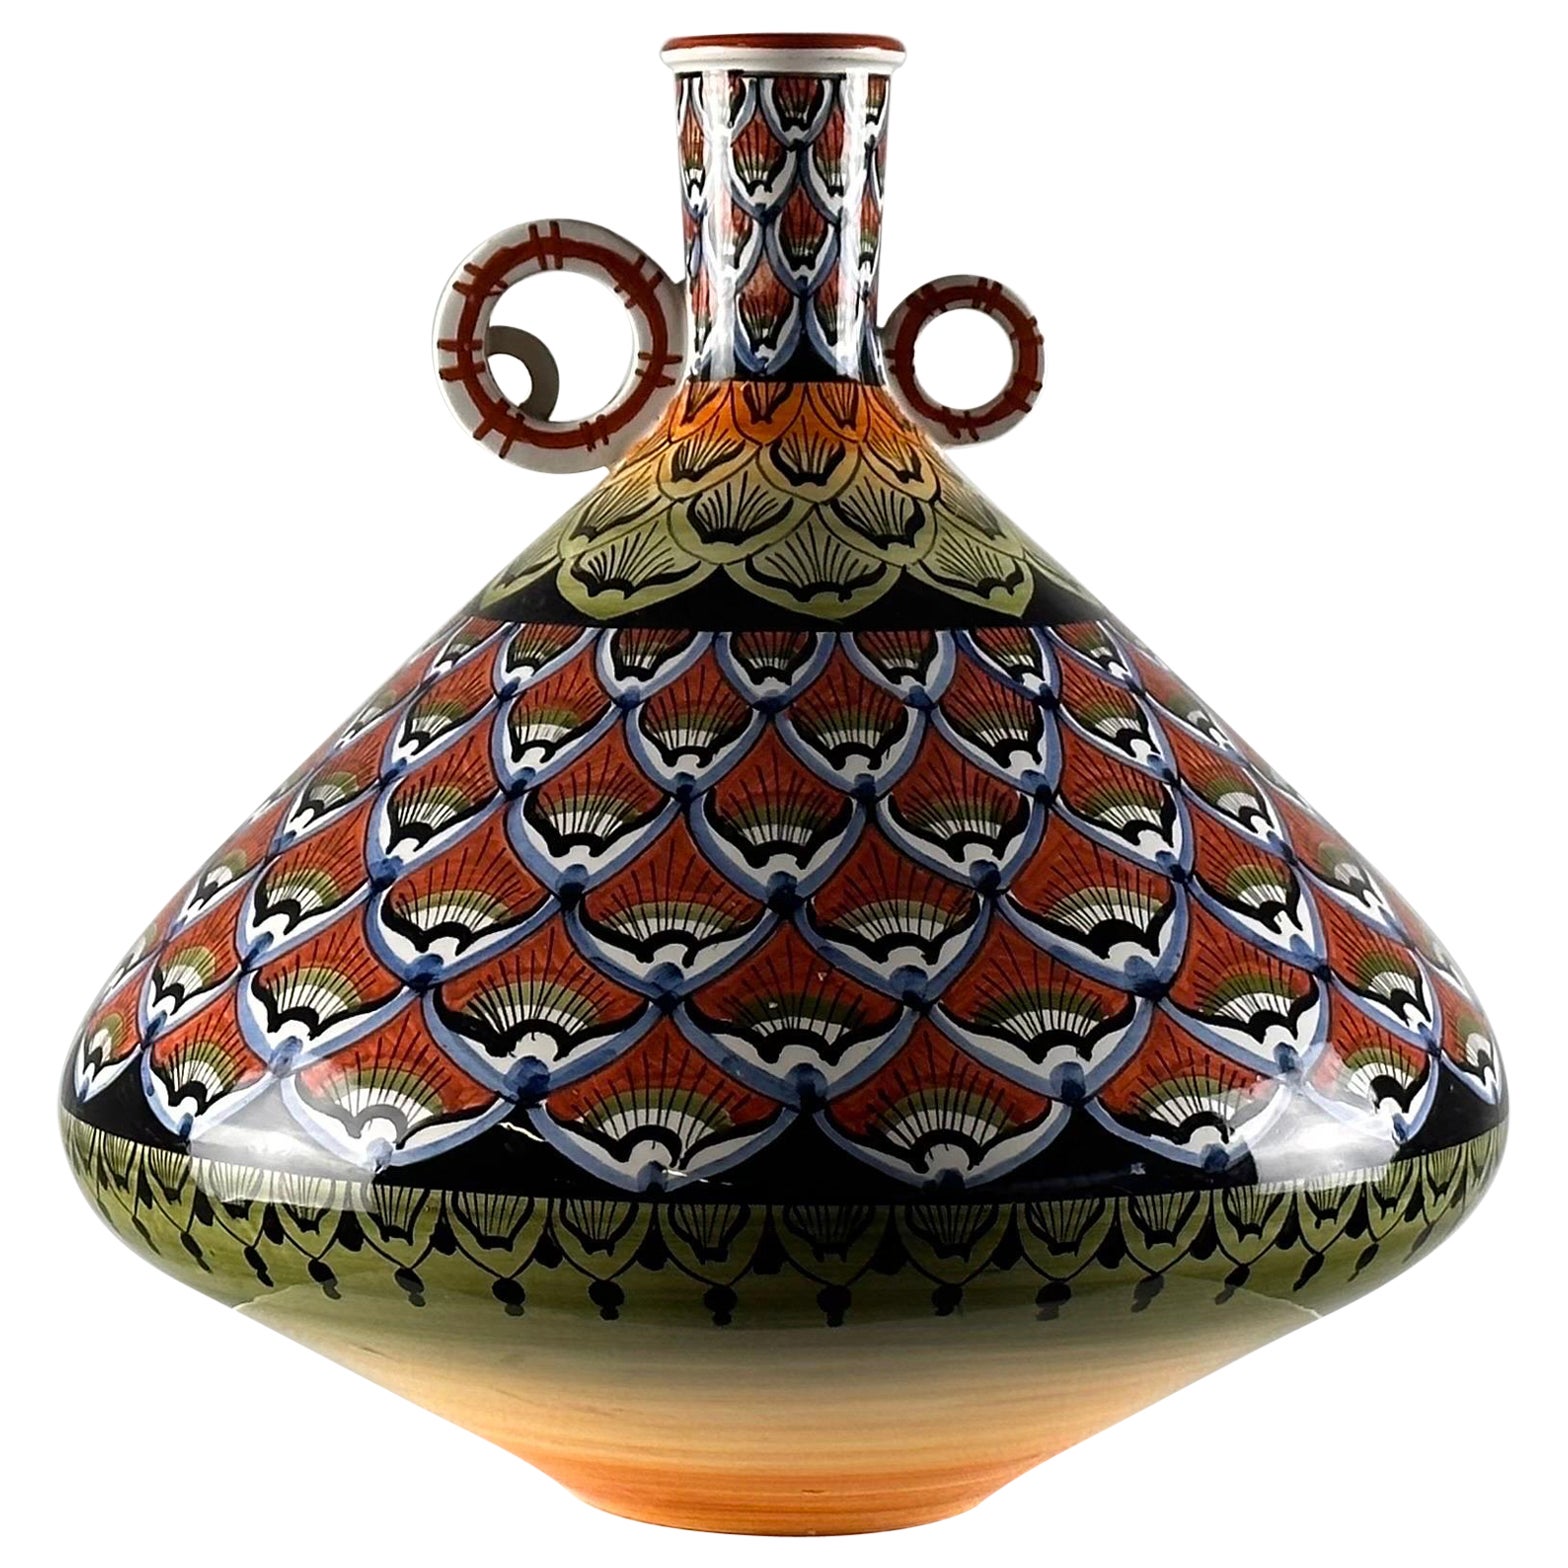 Vase vintage des années 1970 peint à la main - Un délice coloré